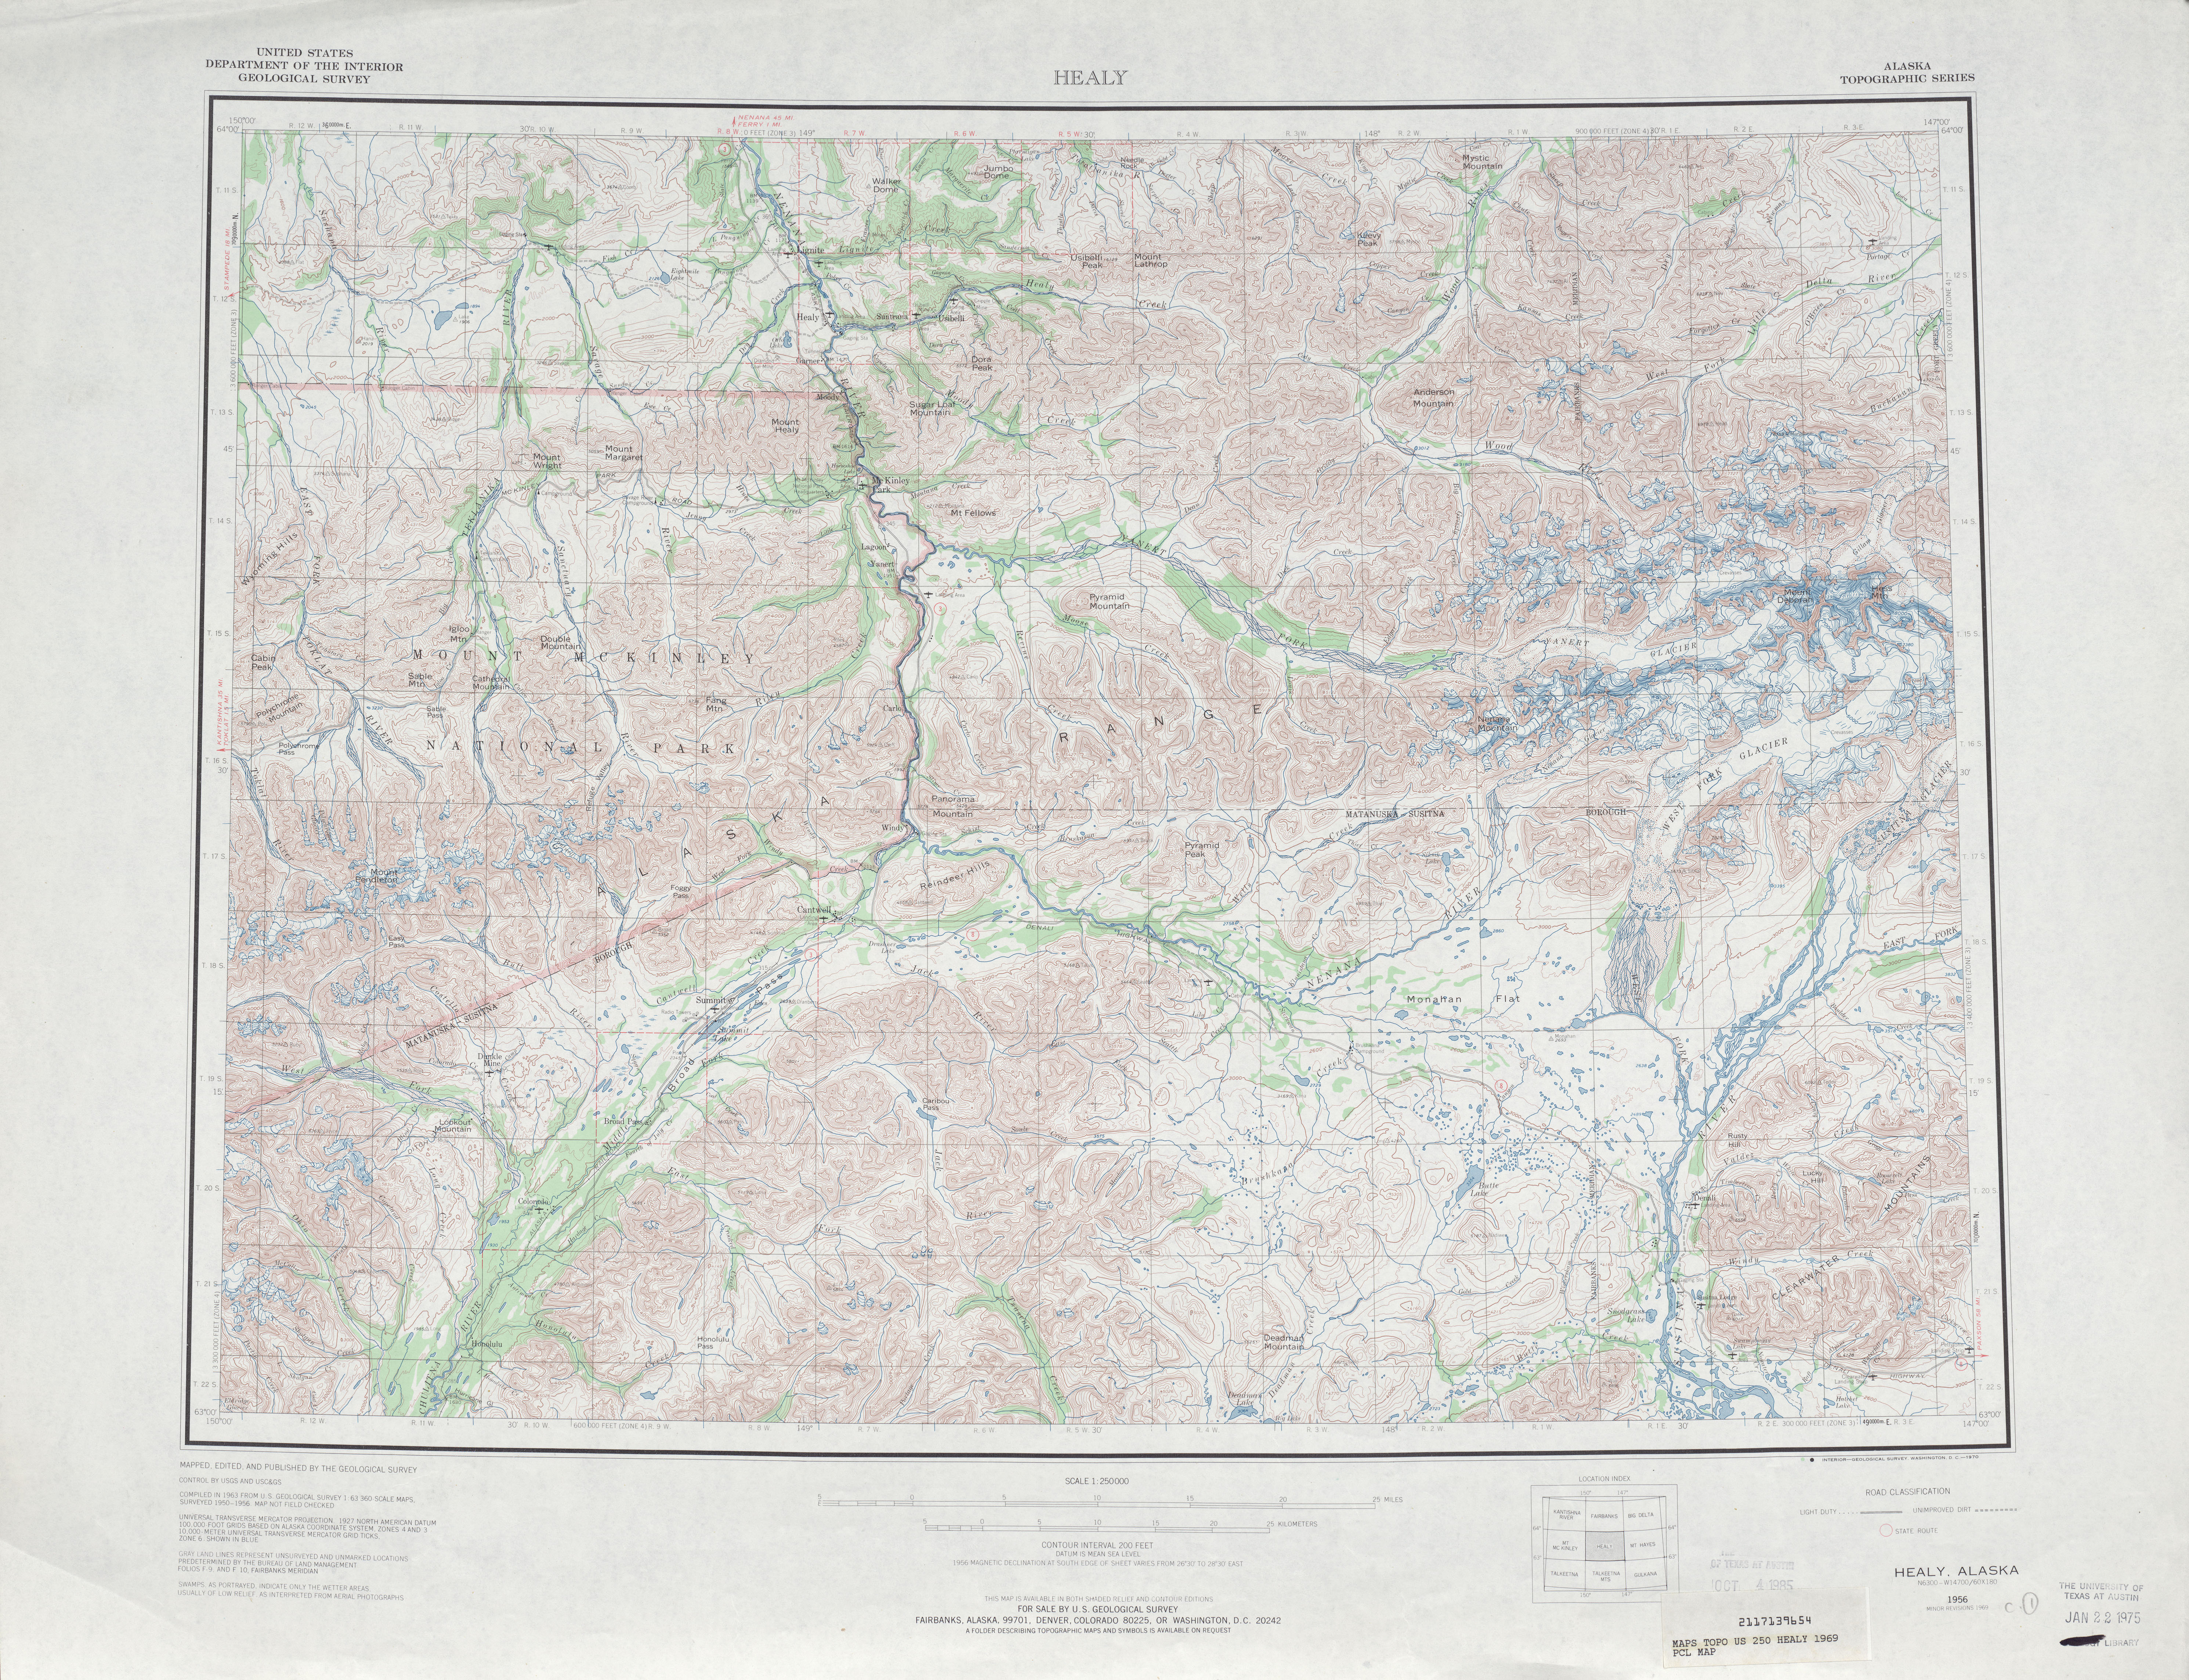 Hoja Healy del Mapa Topográfico de los Estados Unidos 1969